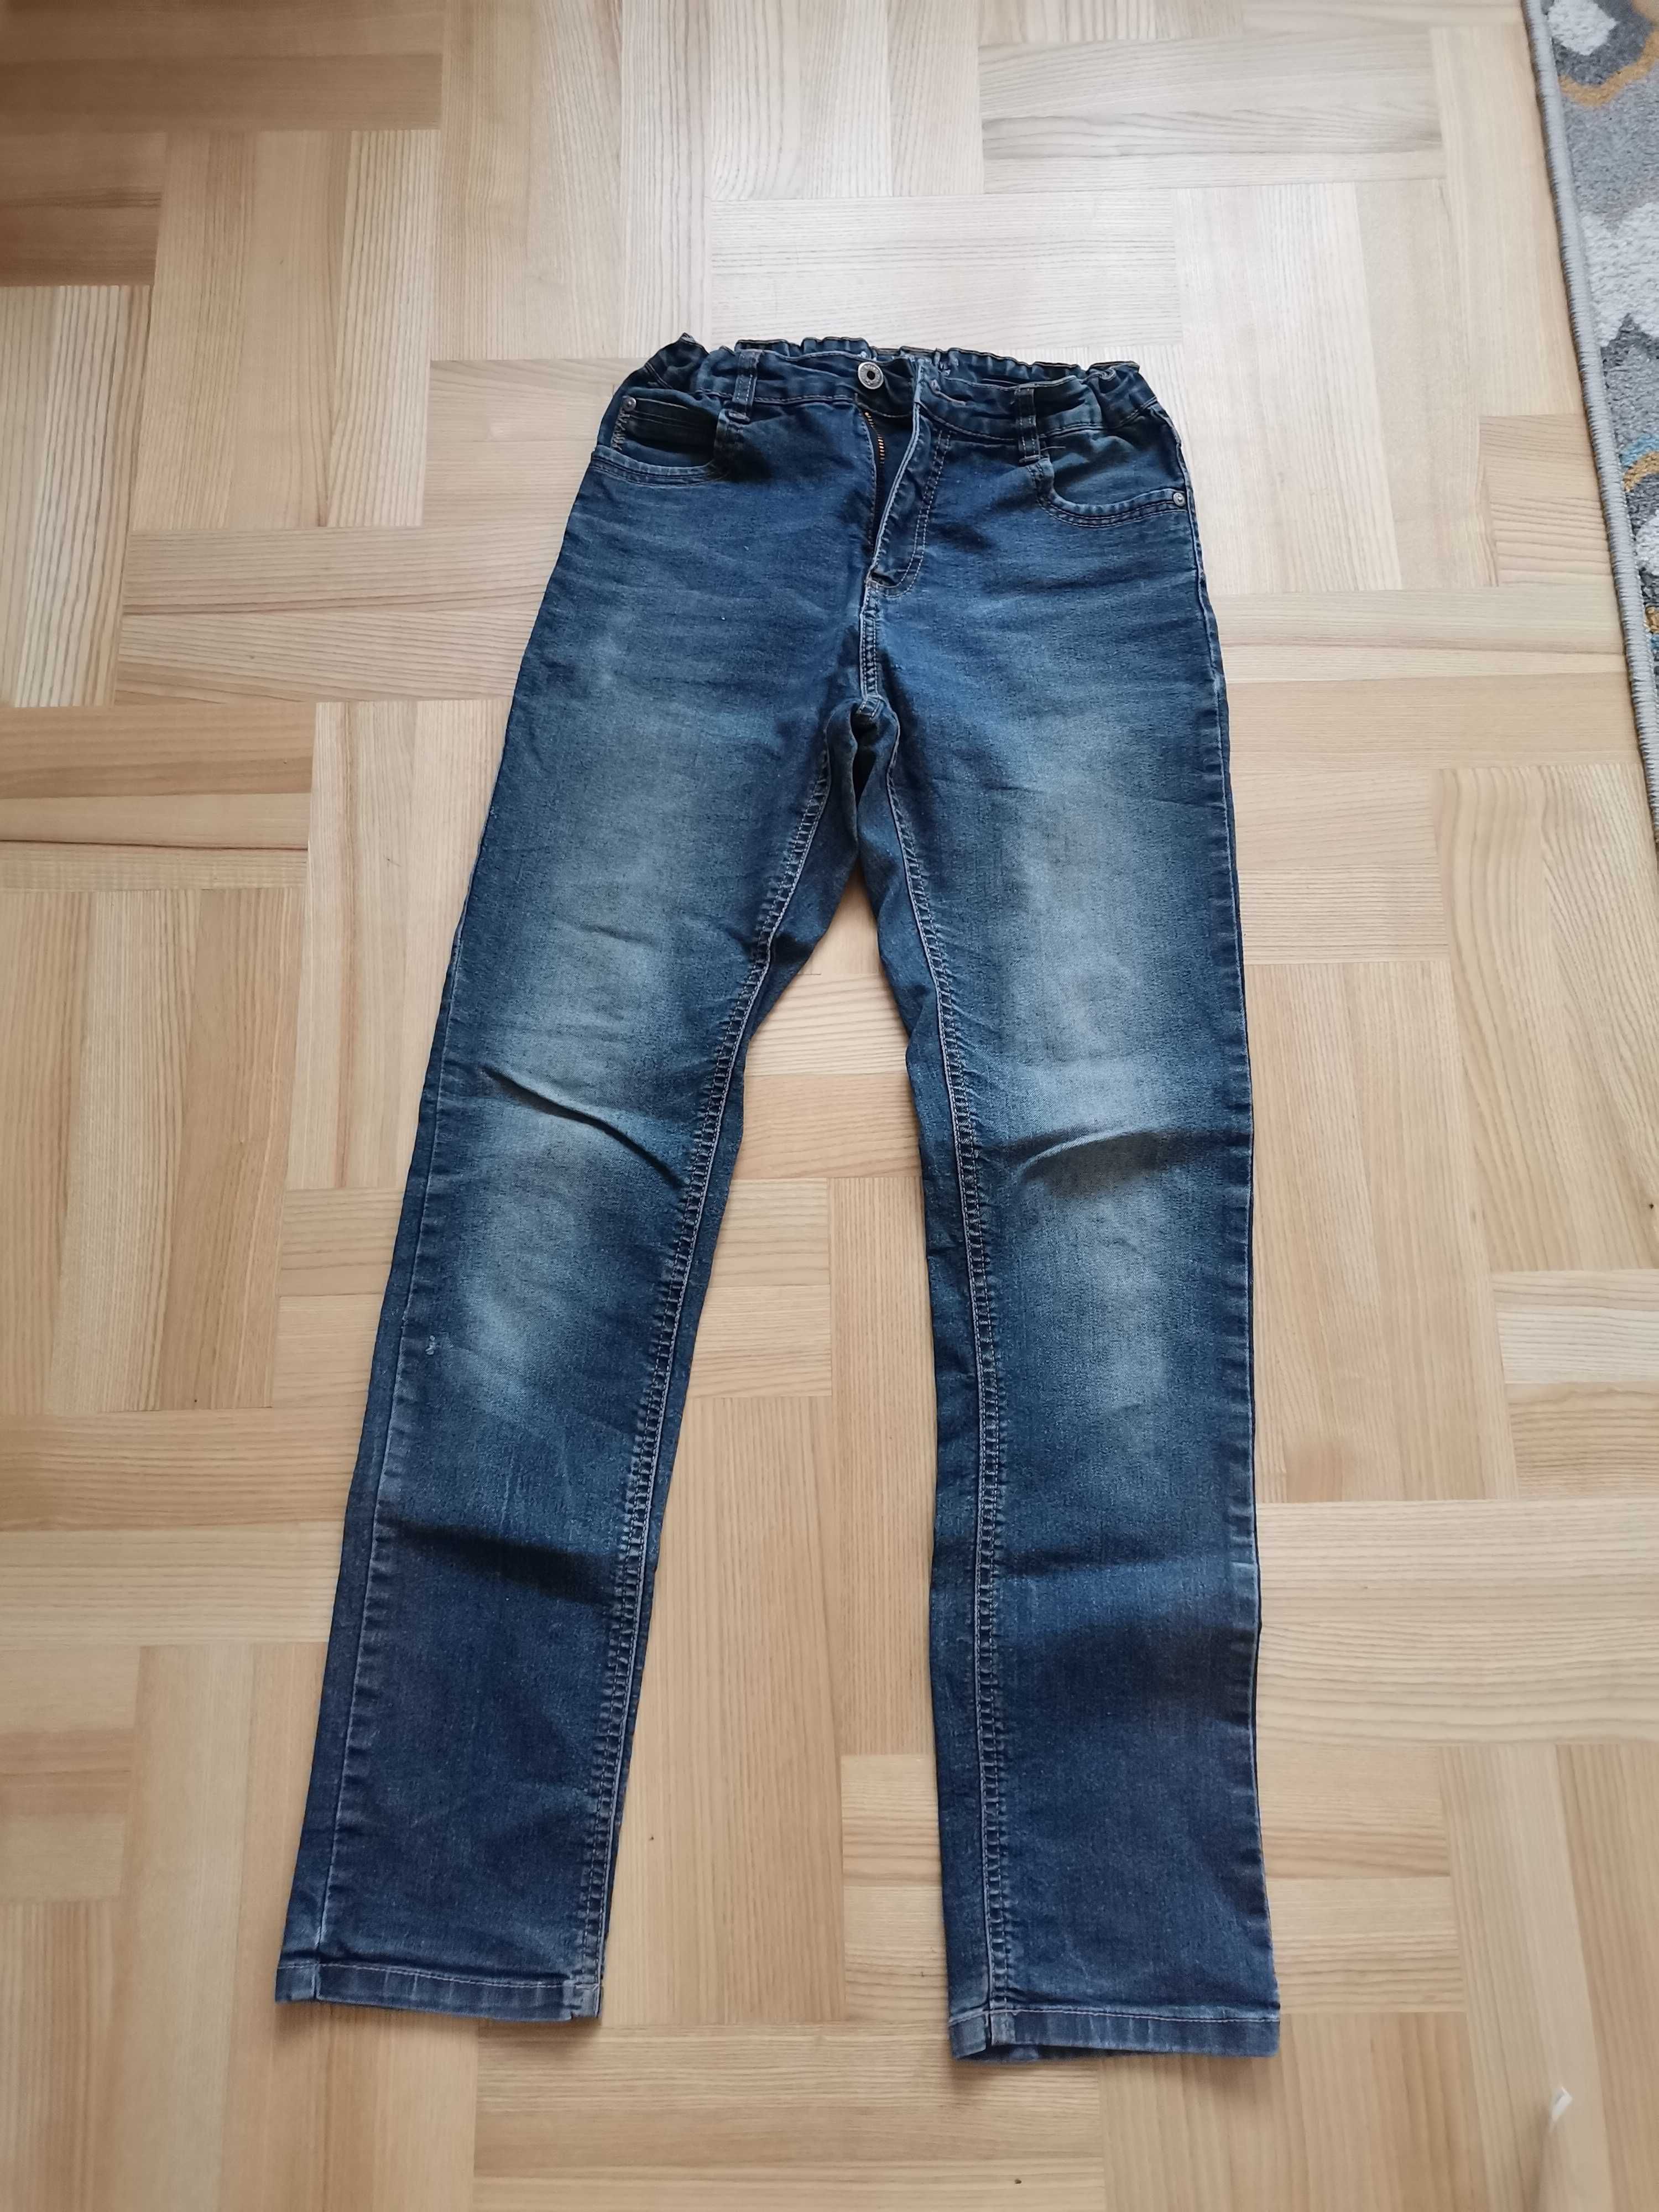 Spodnie jeansowe chłopięce 158 z regulacją w pasie.